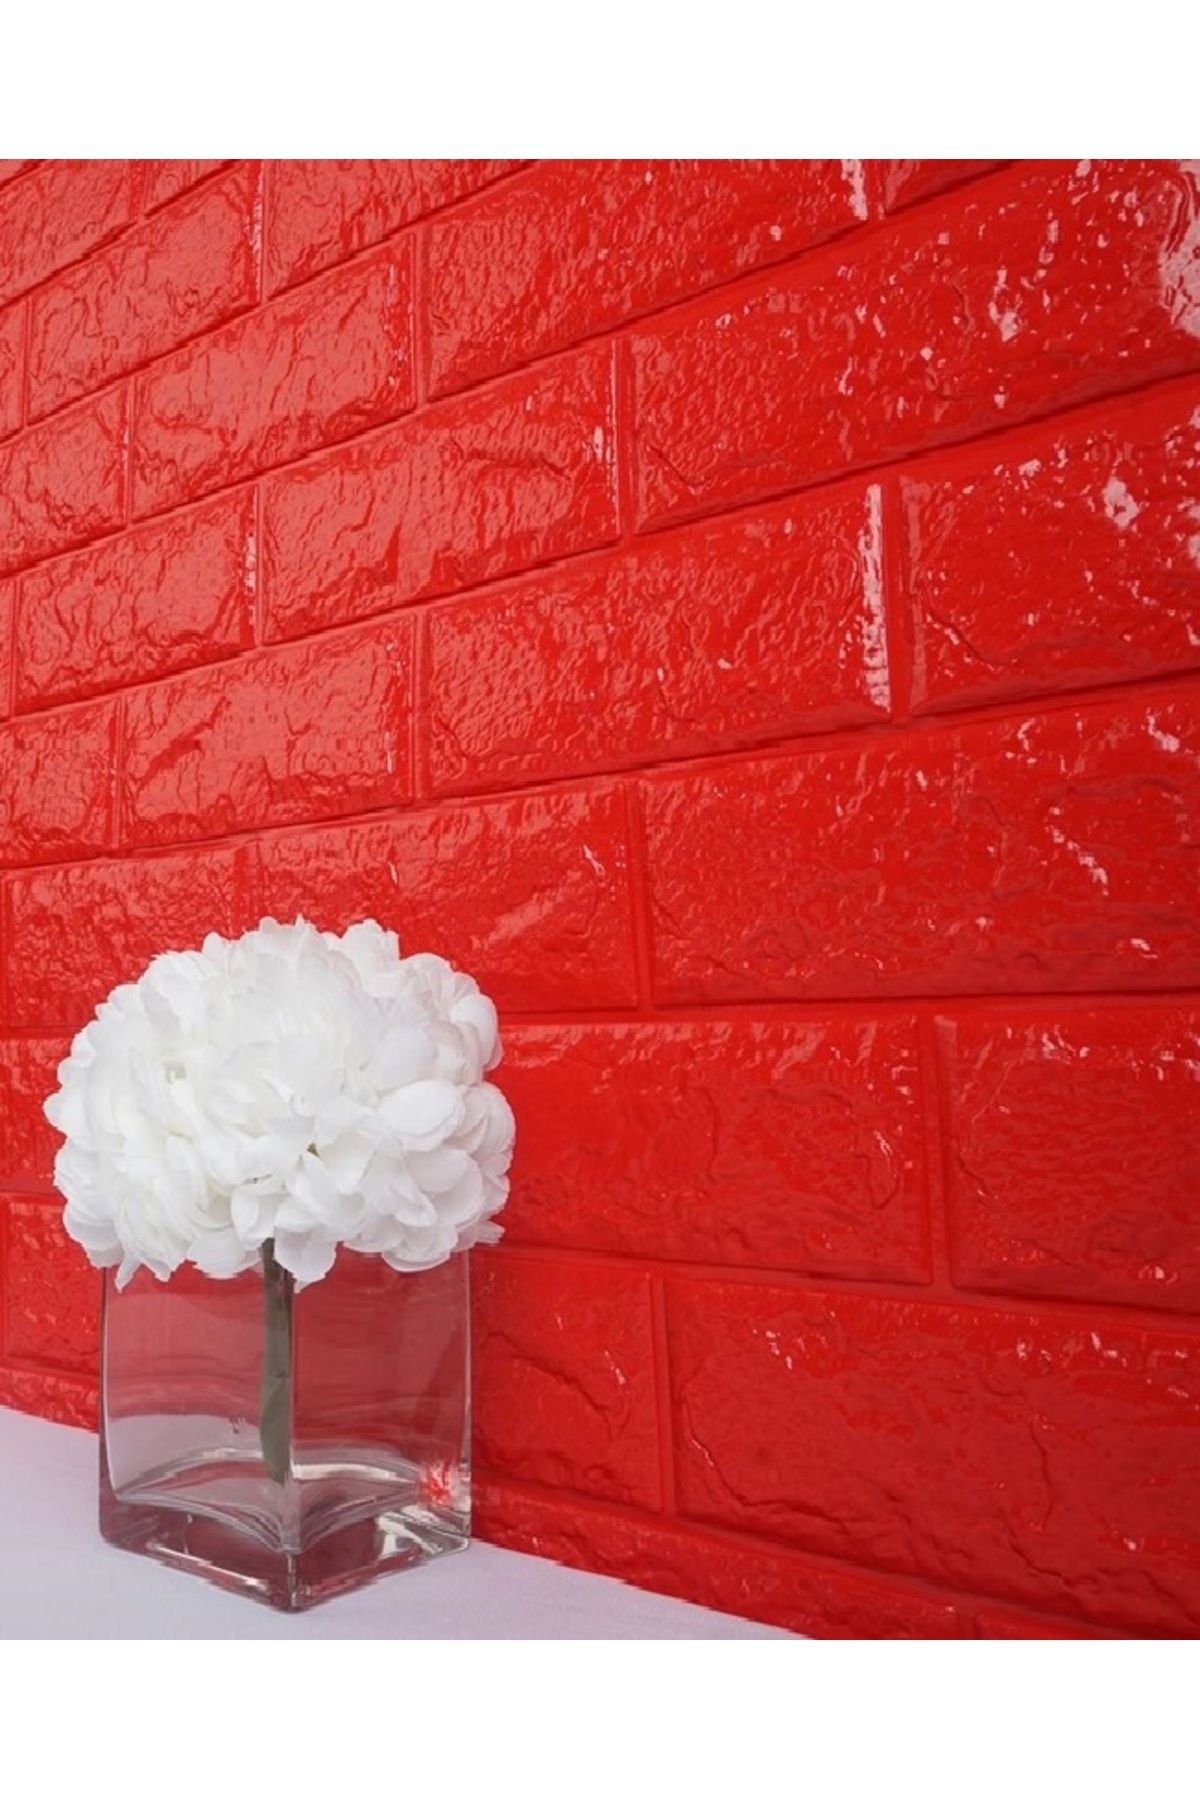 Renkli Duvarlar Nw56 Kırmızı Tuğla Esnek Sünger Duvar Paneli 3d Duvar Kağıdı